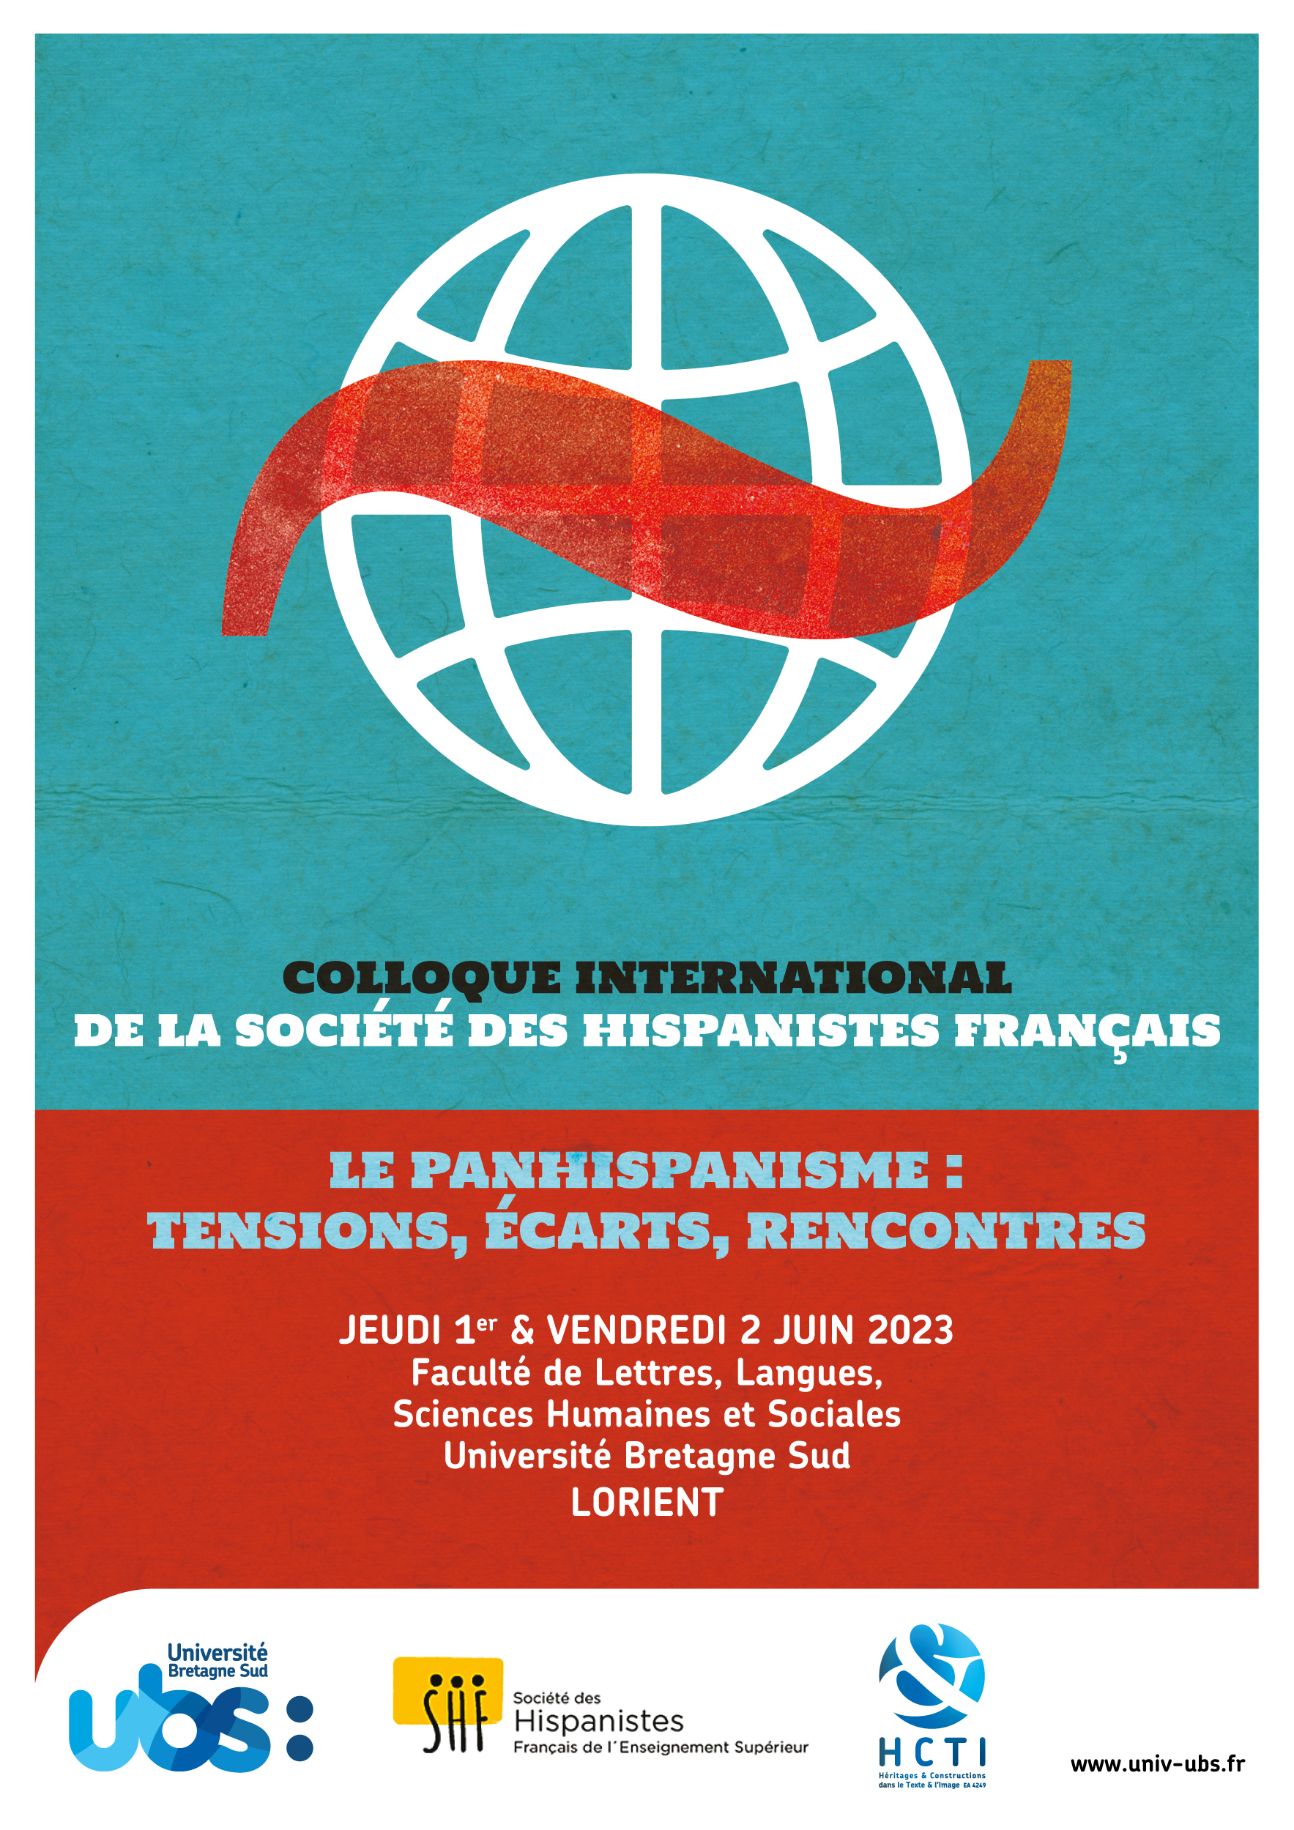 Le Panhispanisme : Tensions, écarts, rencontres. Colloque International de la Sociétés des Hispanistes Français (Lorient)